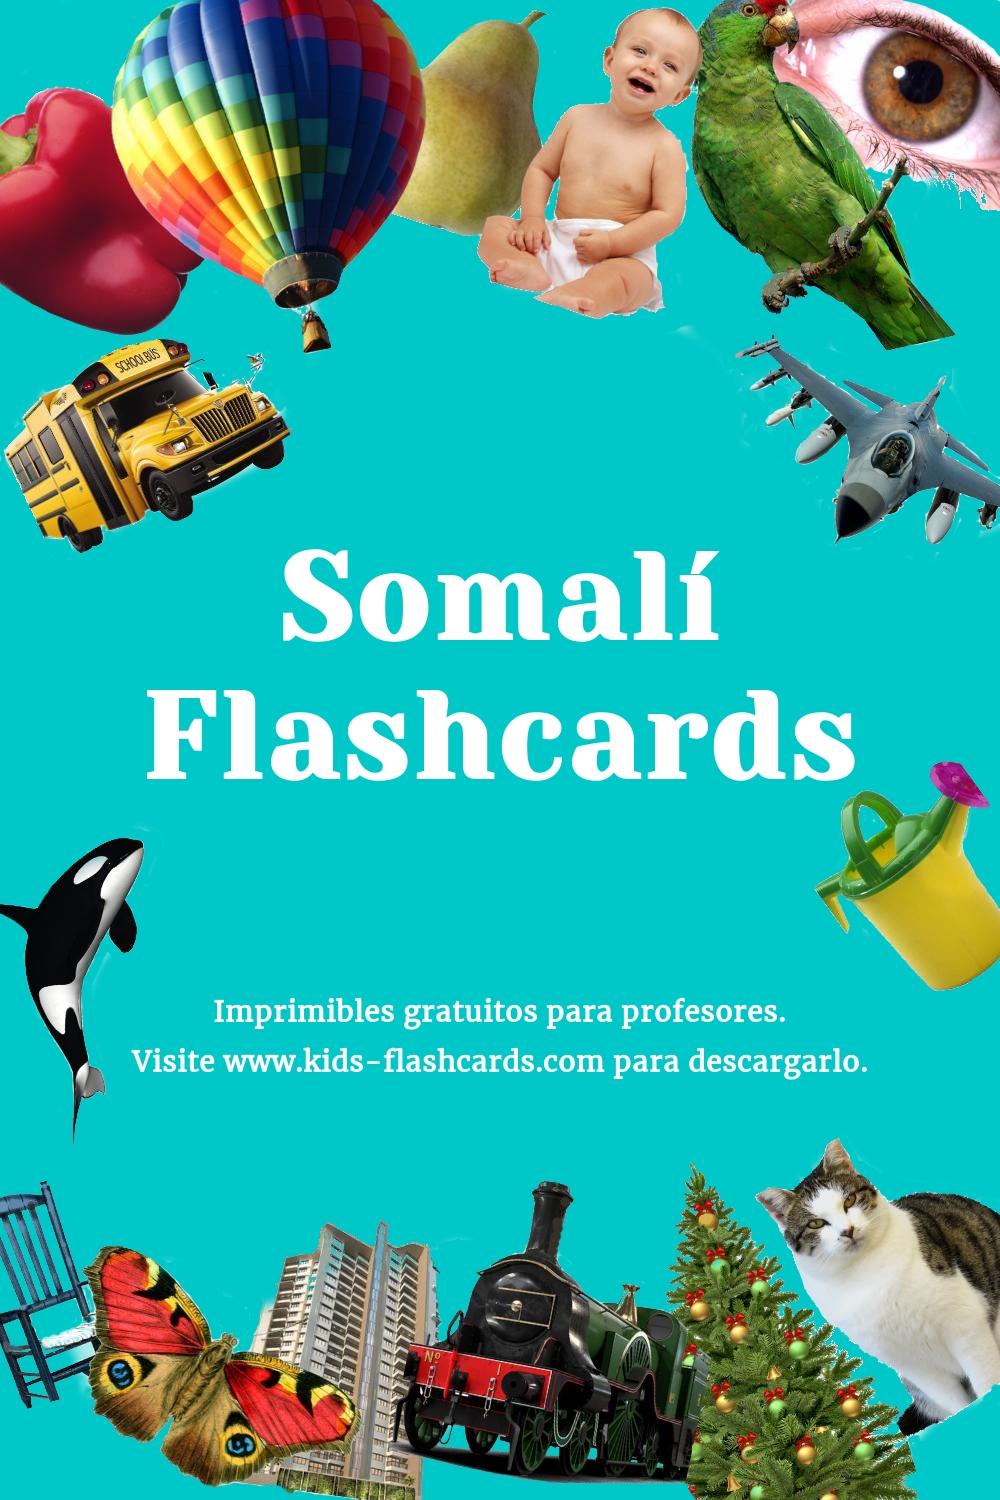 Imprimibles Gratuitos en Somalí